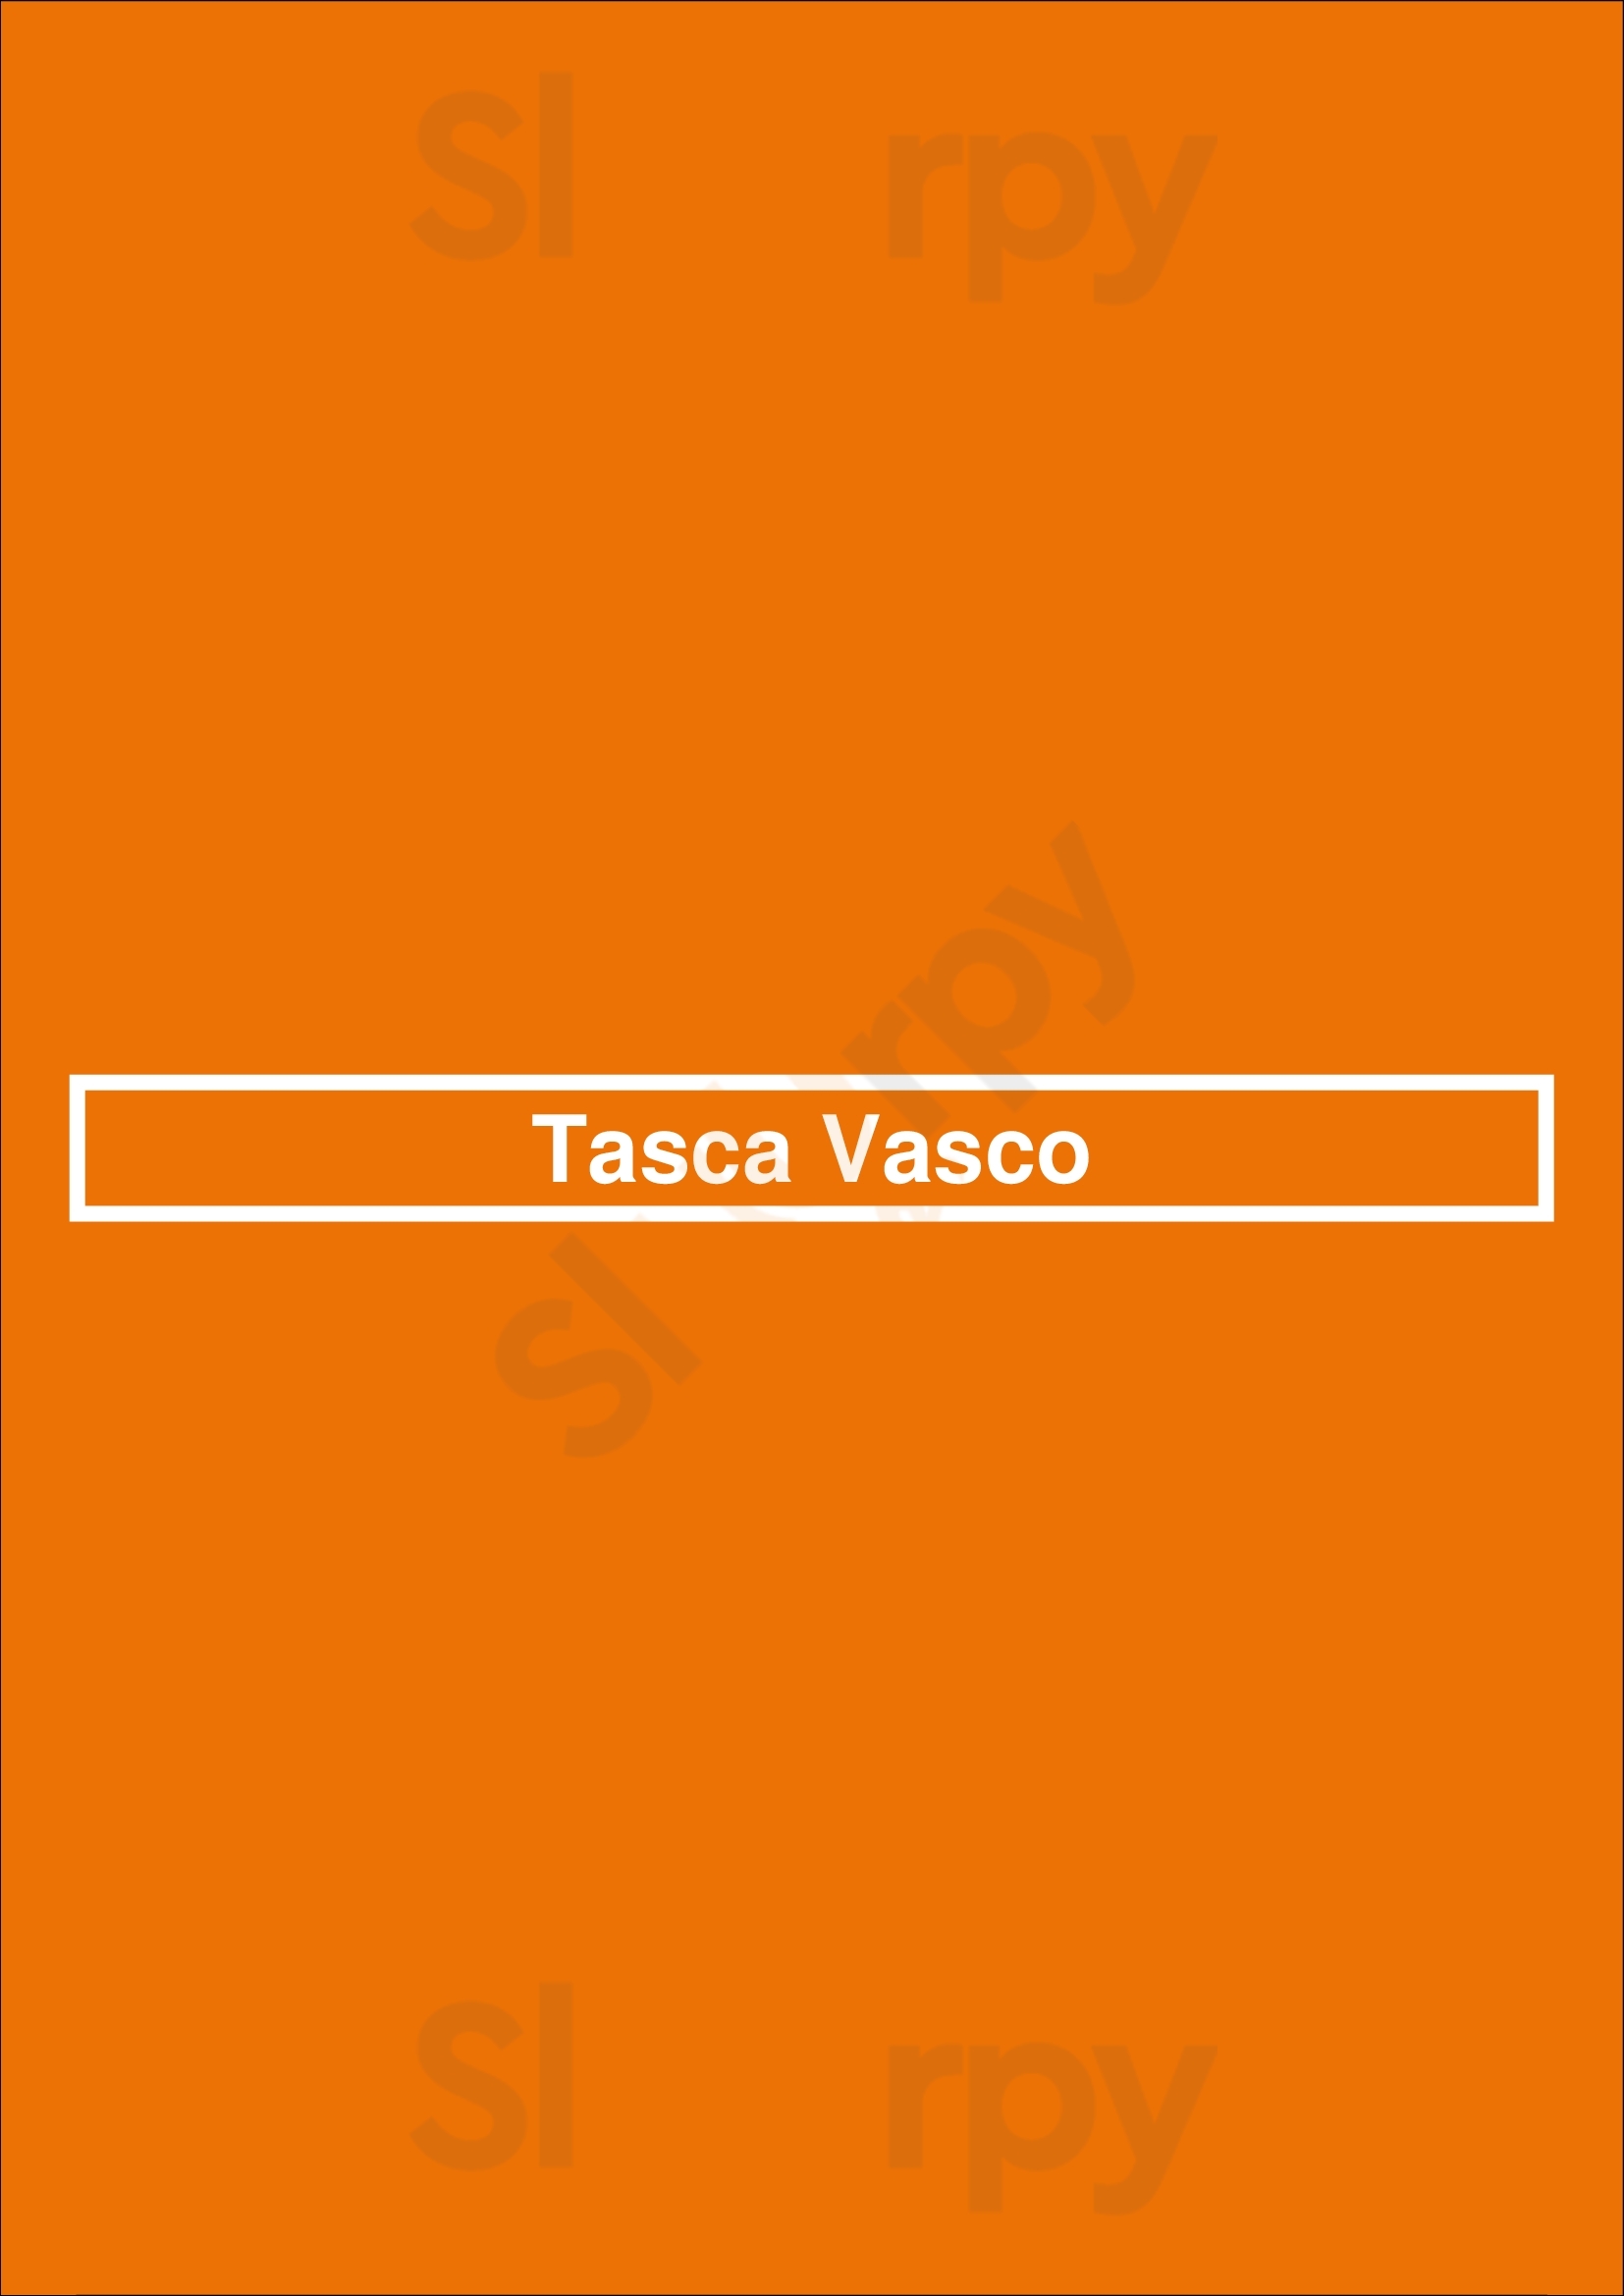 Tasca Vasco Porto Menu - 1